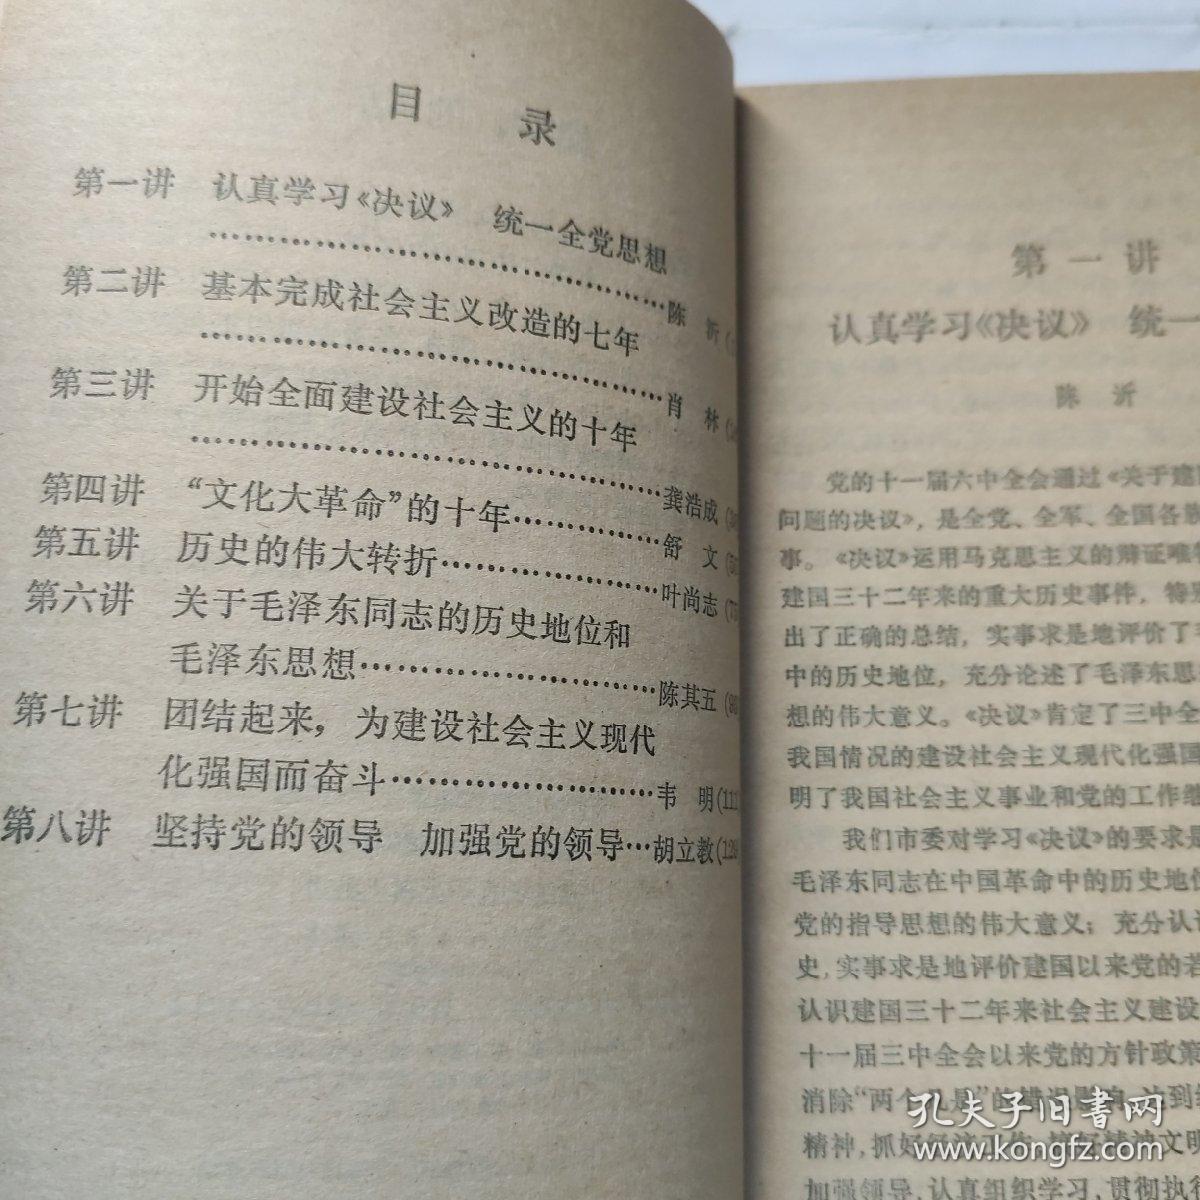 学习《关于建国以来党的若干历史问题的决议》讲座(32开 上海人民出版社